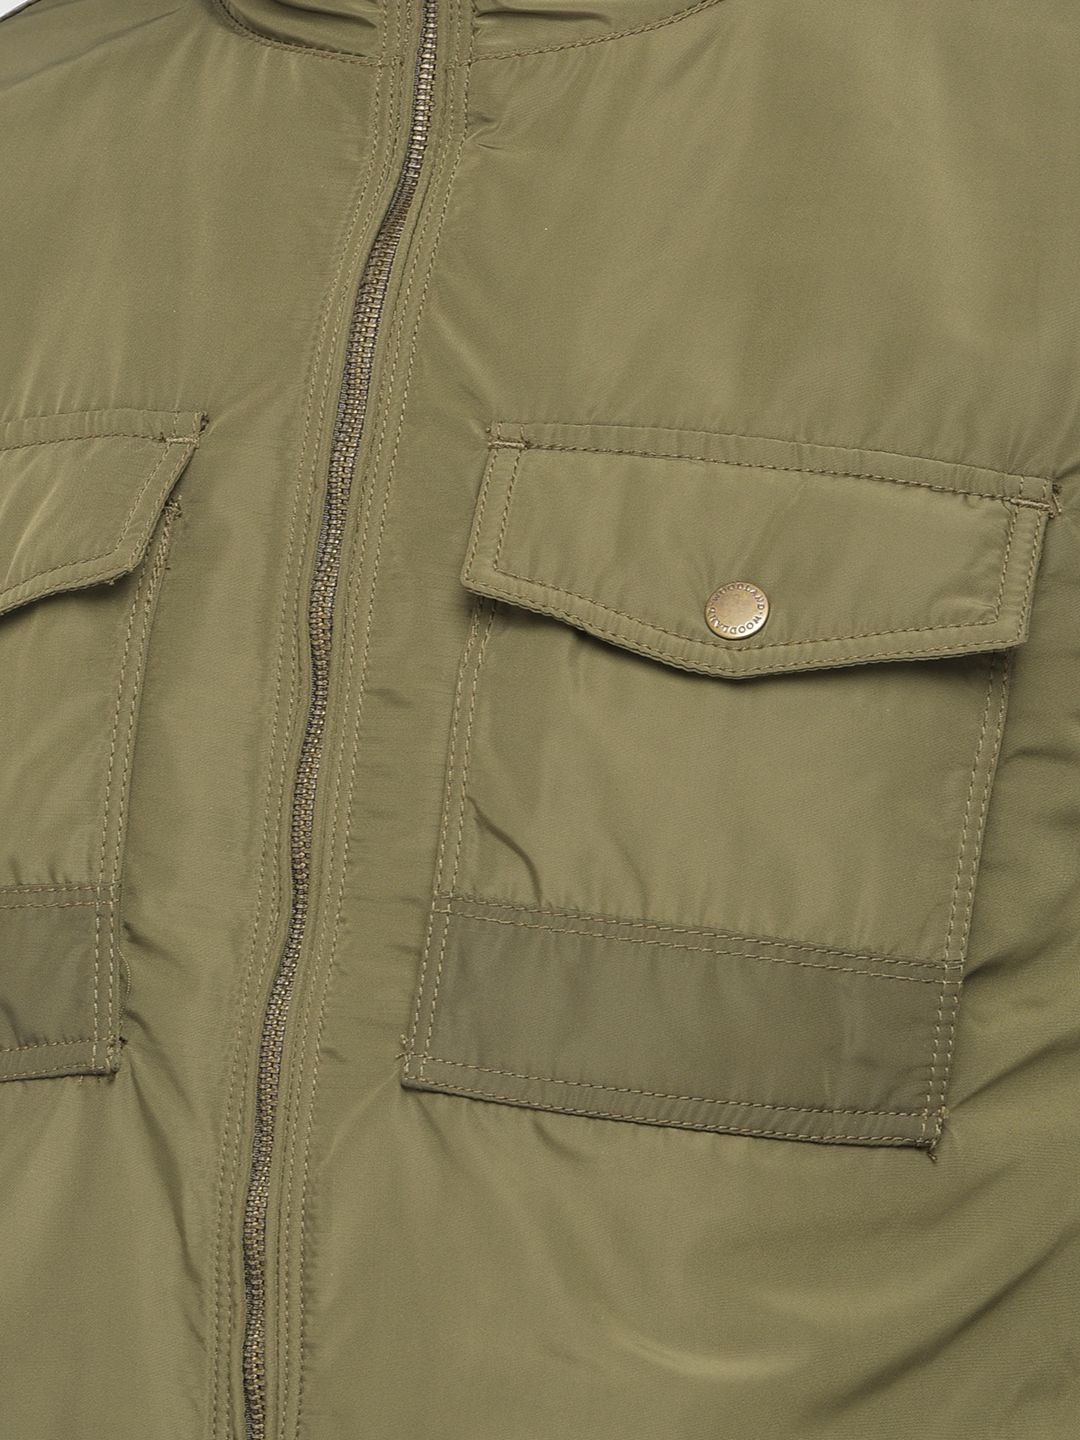 MIL-TEC Waterproof jacket Army style GEN II lined winter woodland camo  parka | eBay